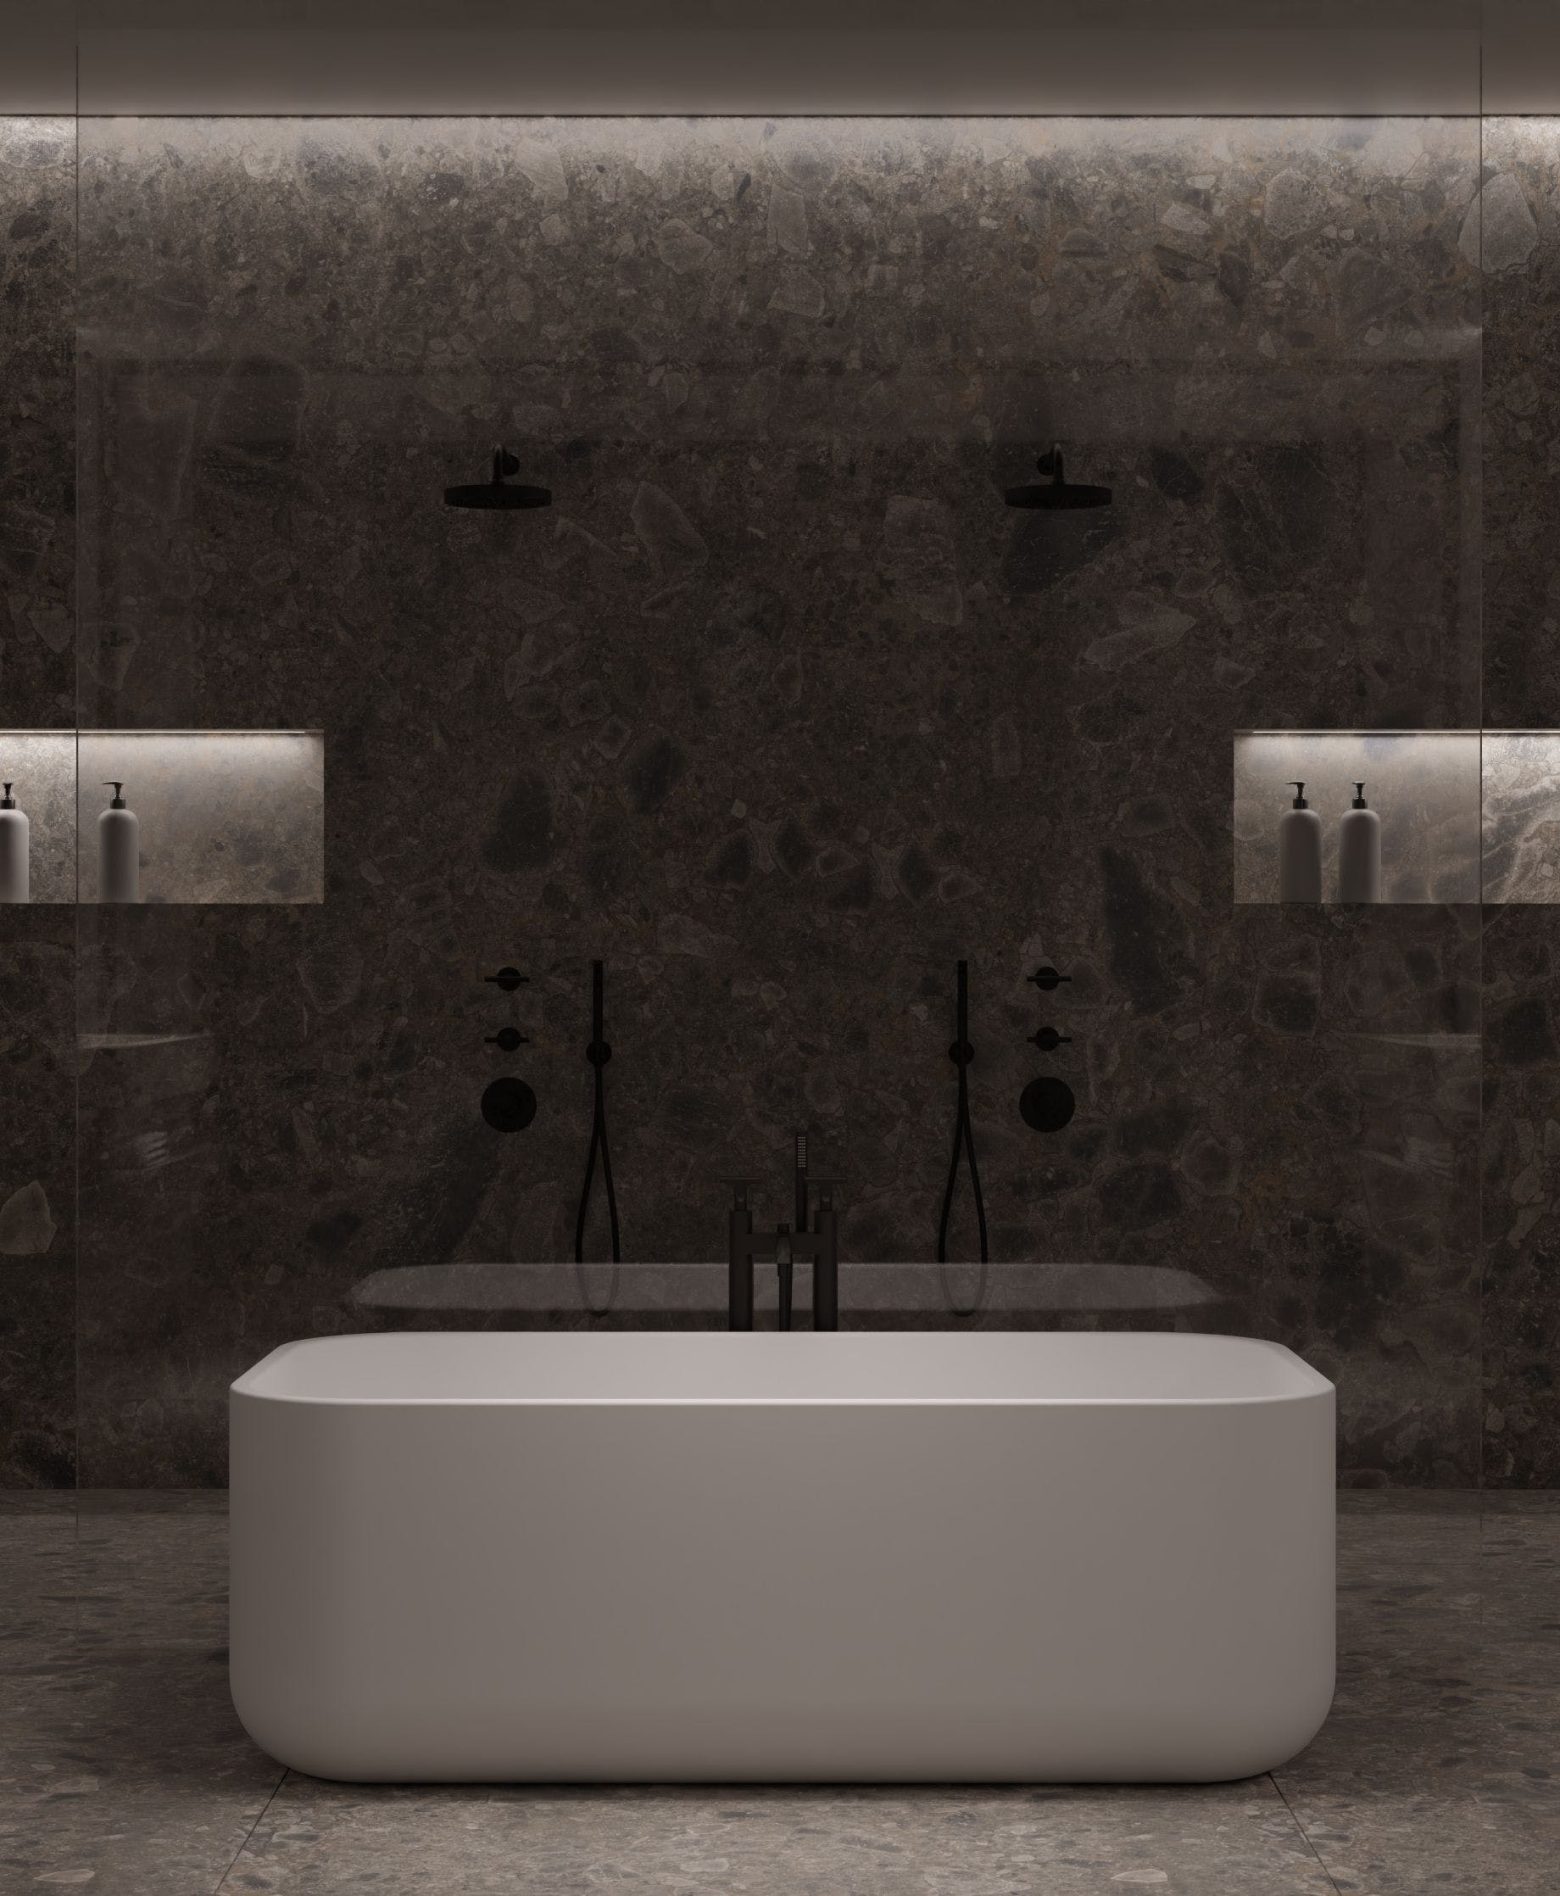 Une salle de bain design avec une baignoire blanche au milieu et des étagères lumineuses